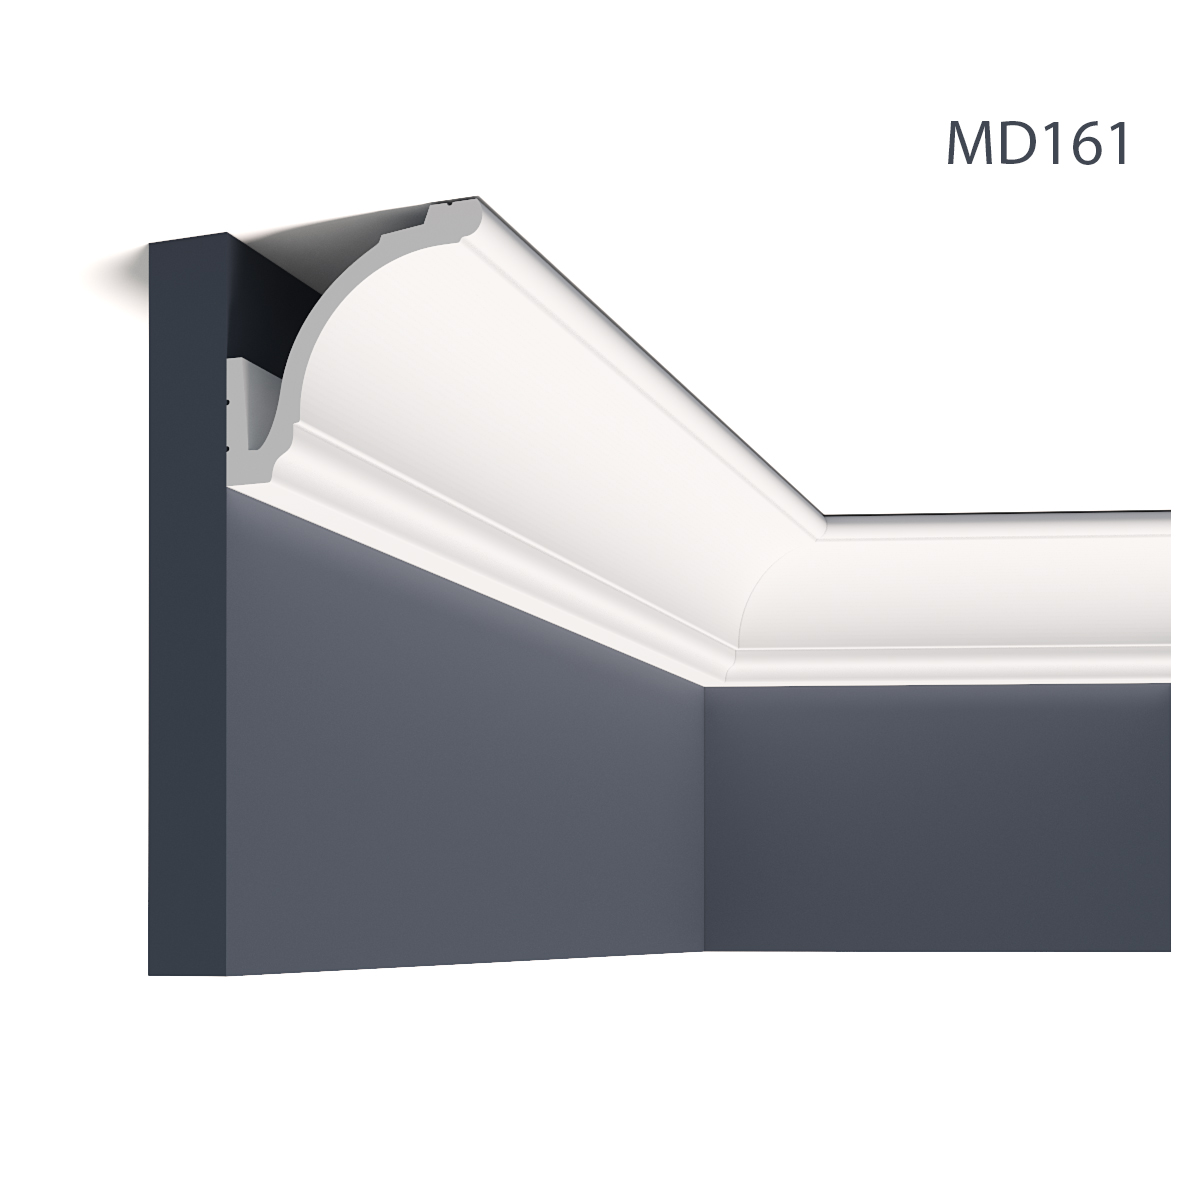 Cornisa mascare galerie pentru LED MD161, 200 X 9.2 X 8.3 cm, Mardom Decor, Cornișe mascare galerie 